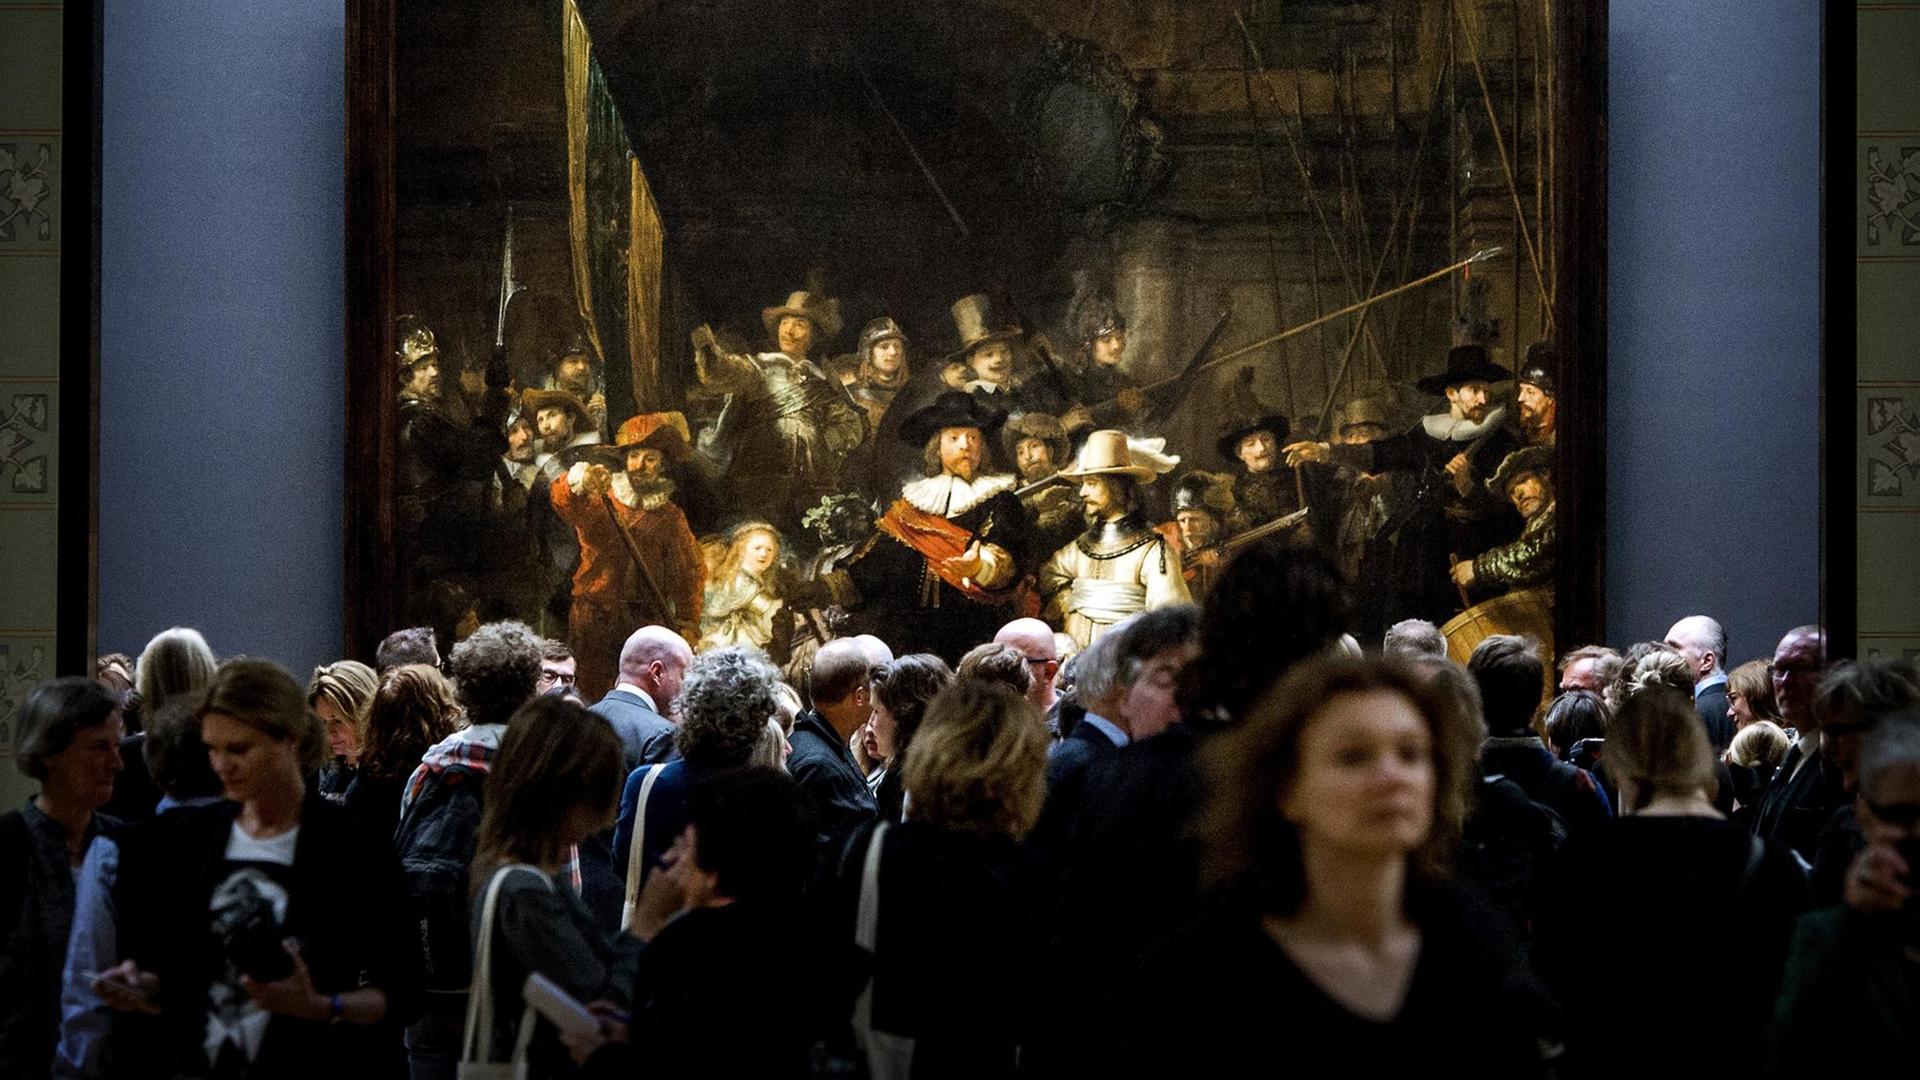 Eine Masse von BesucherInnen vor der Nachtwache im Rijksmuseum.